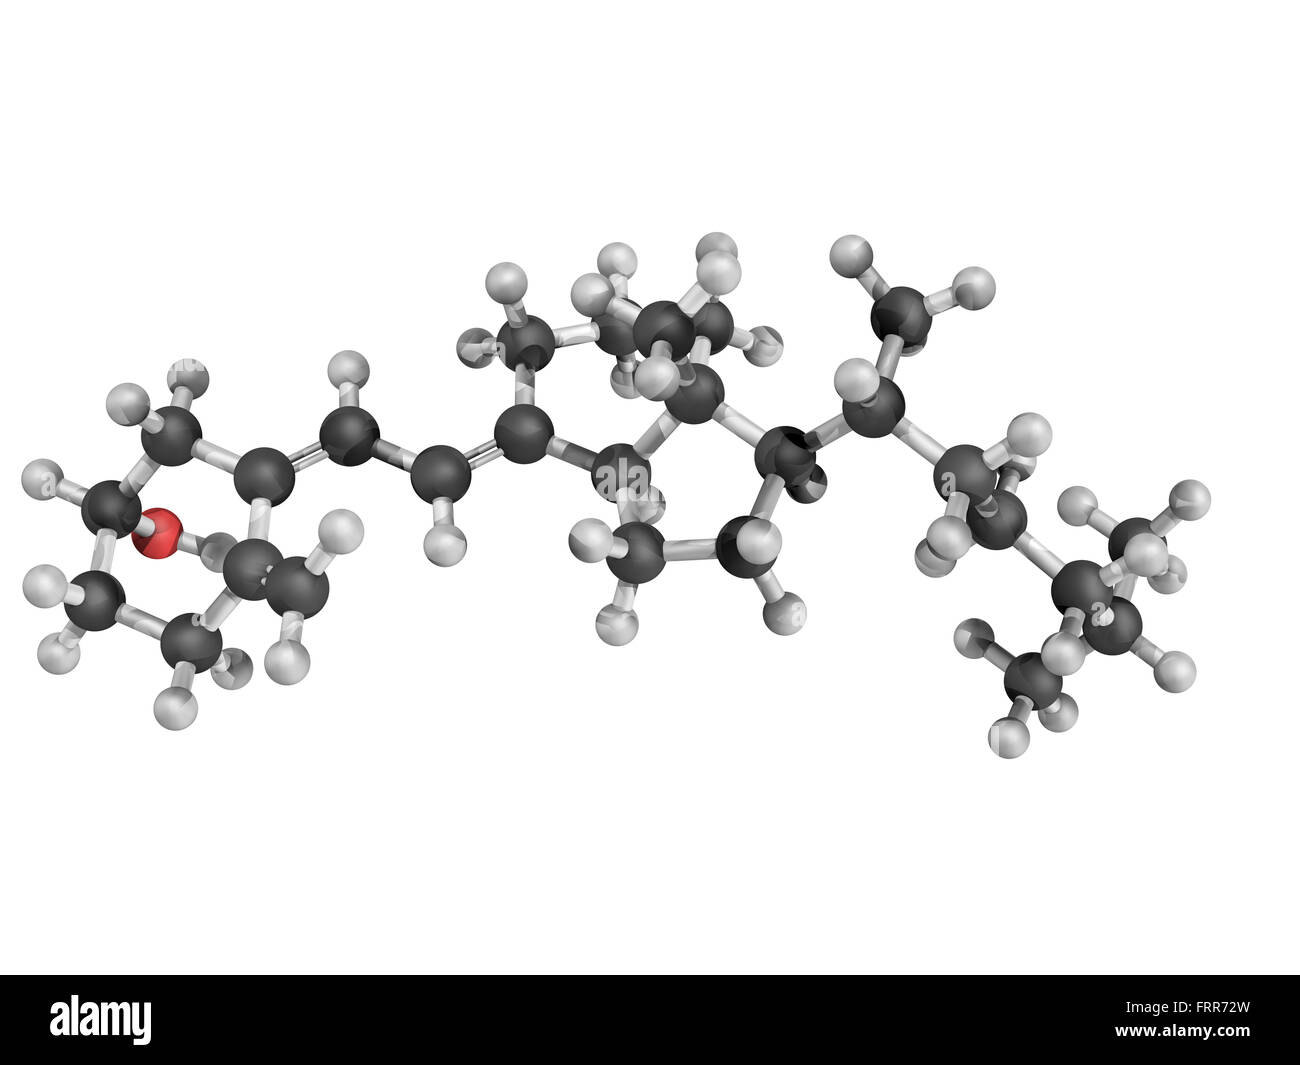 Chemische Struktur von Vitamin D3 (Cholecalciferol). Es ist strukturell  ähnlich wie Steroide wie Testosteron, Cholesterin, ein Stockfotografie -  Alamy